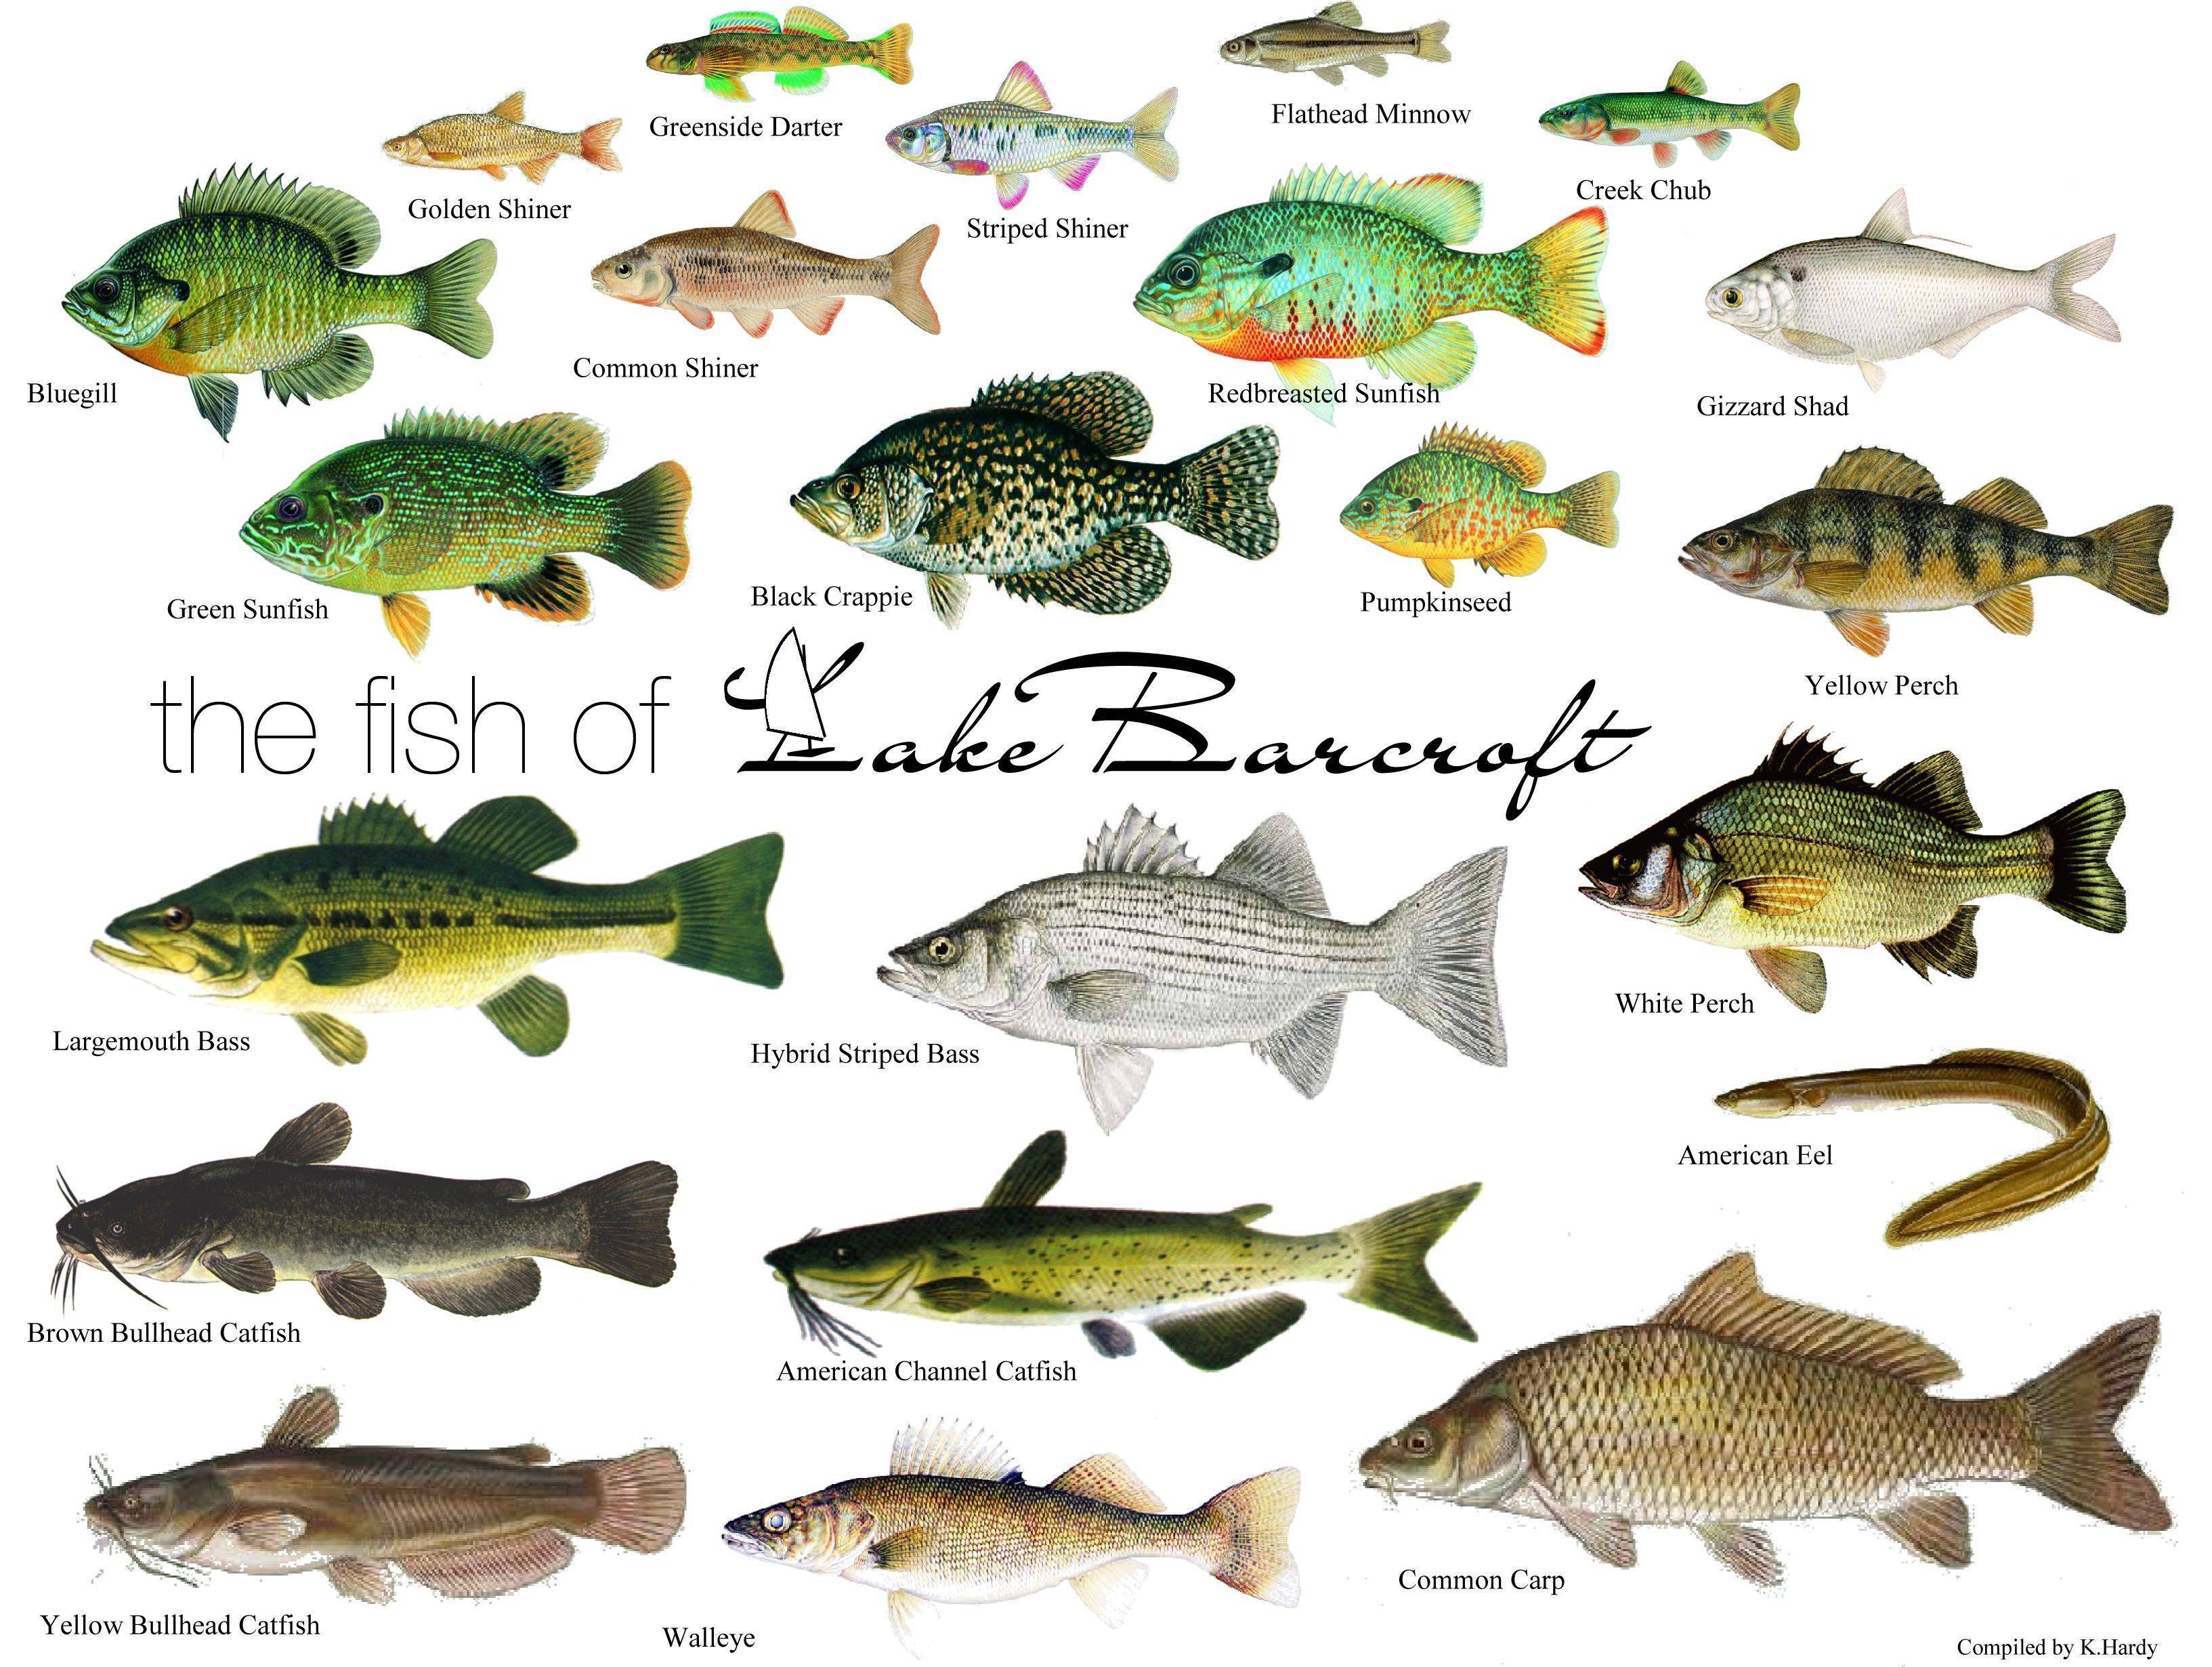 Морская рыба: полный список, виды с названиями и фото